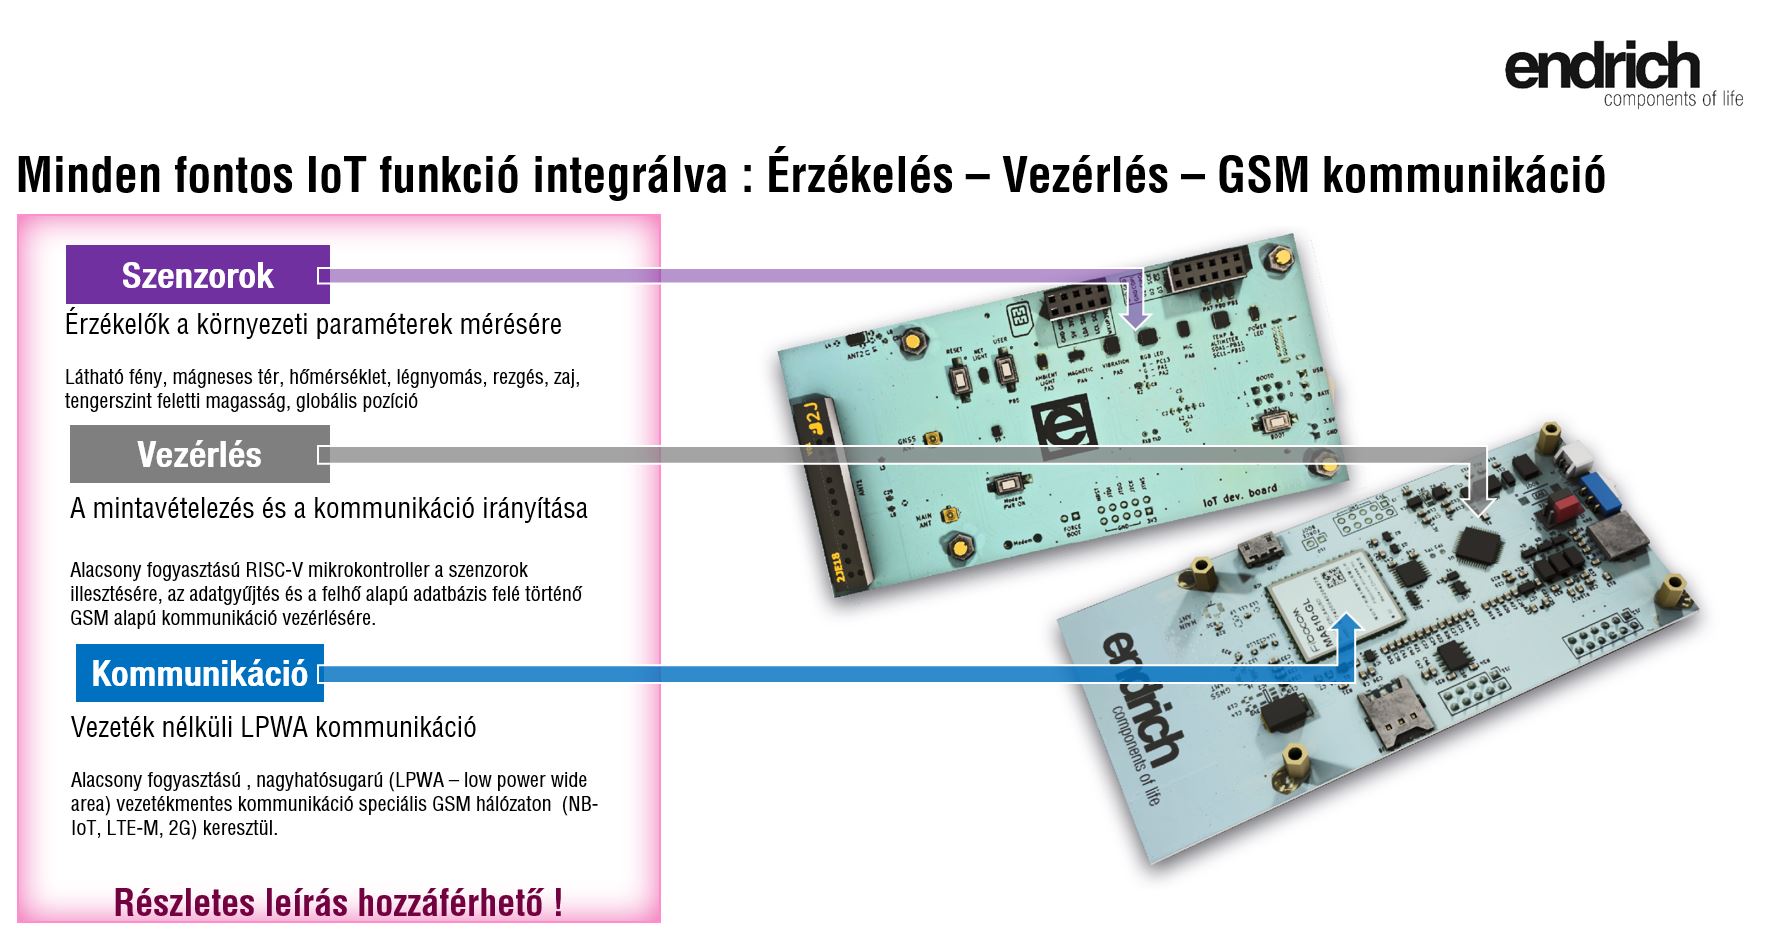 [5] Az Endrich „3In1” Szenzor, mikrovezérlő és kommunikációs kártya
